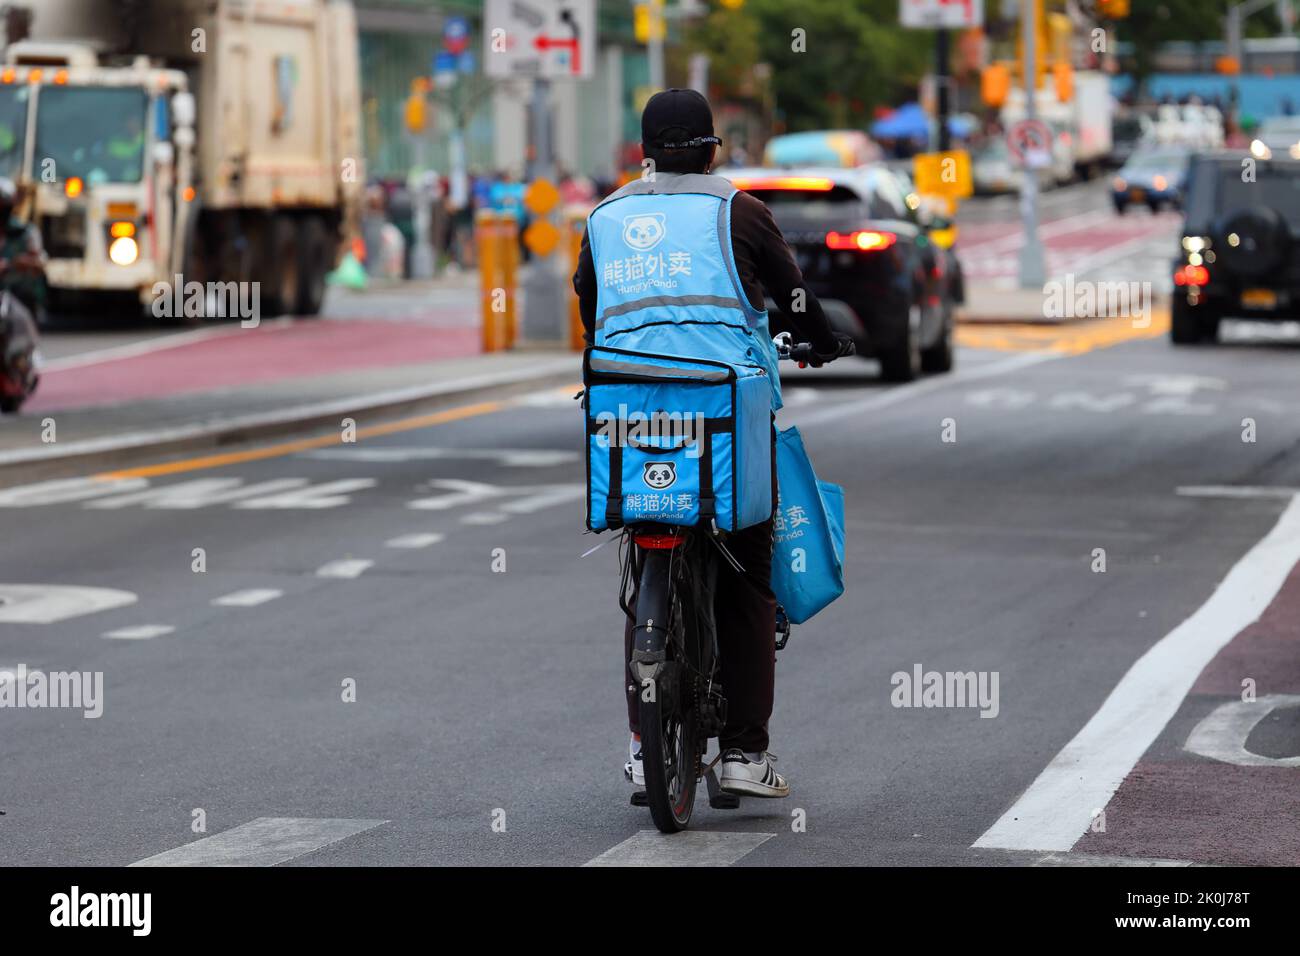 Una persona che consegna cibo HungryPanda su una bicicletta elettrica nel centro di Flushing, New York. Panda 熊貓外賣 affamato cibo asiatico consegna. Foto Stock